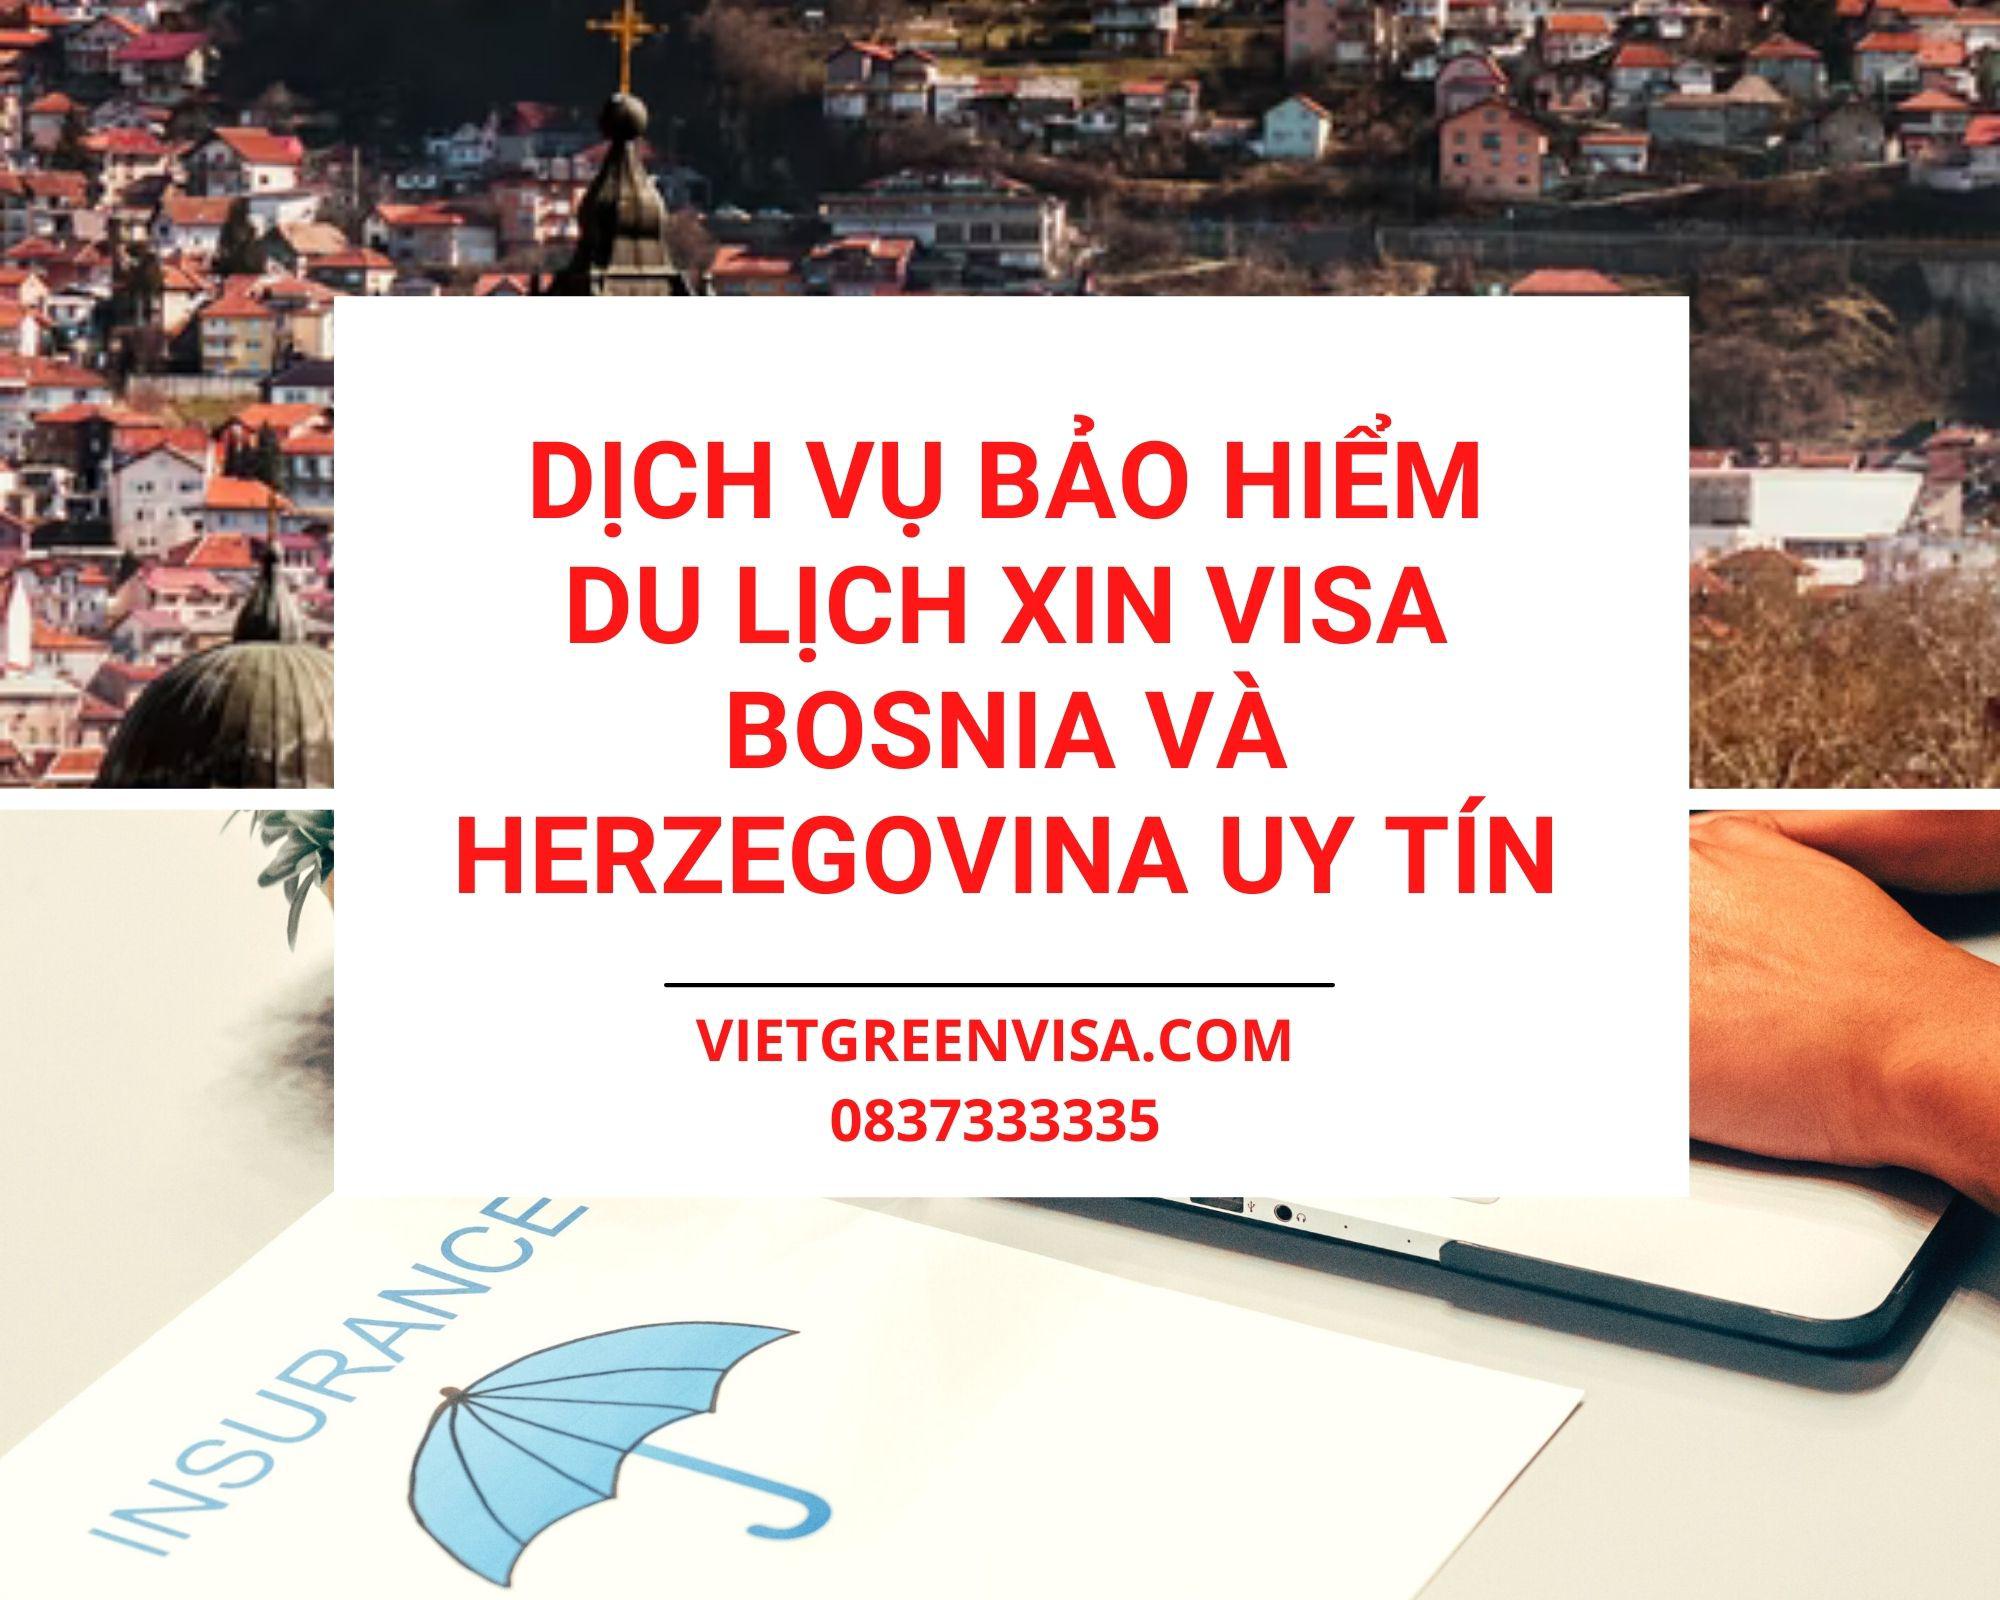 Dịch vụ bảo hiểm du lịch xin visa Bosnia và Herzegovina